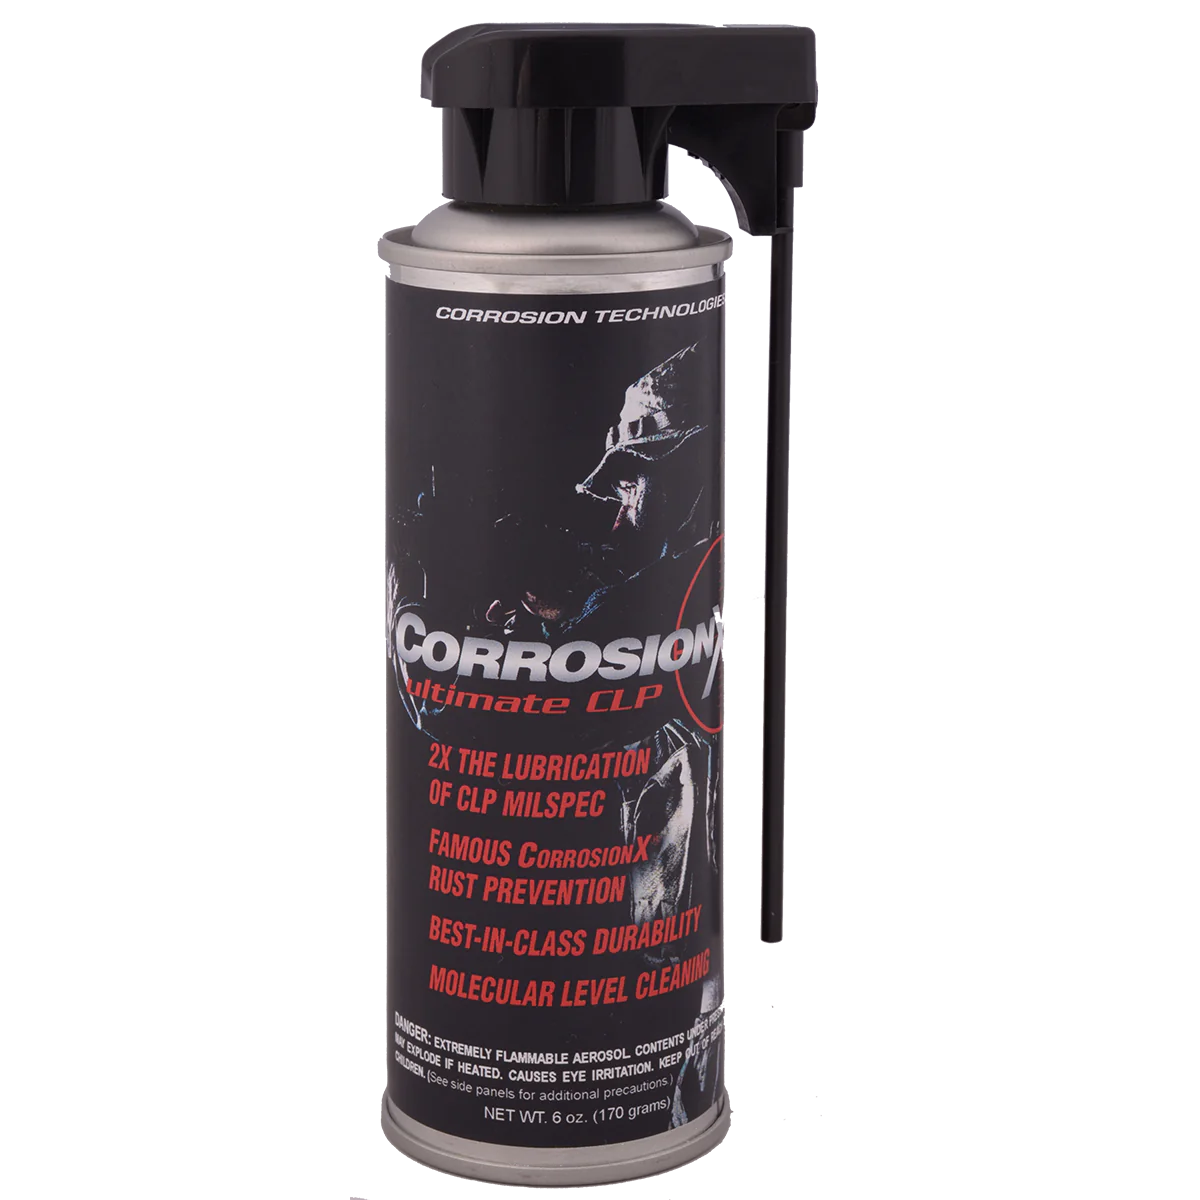 CorrosionX CLP 6oz aerosol